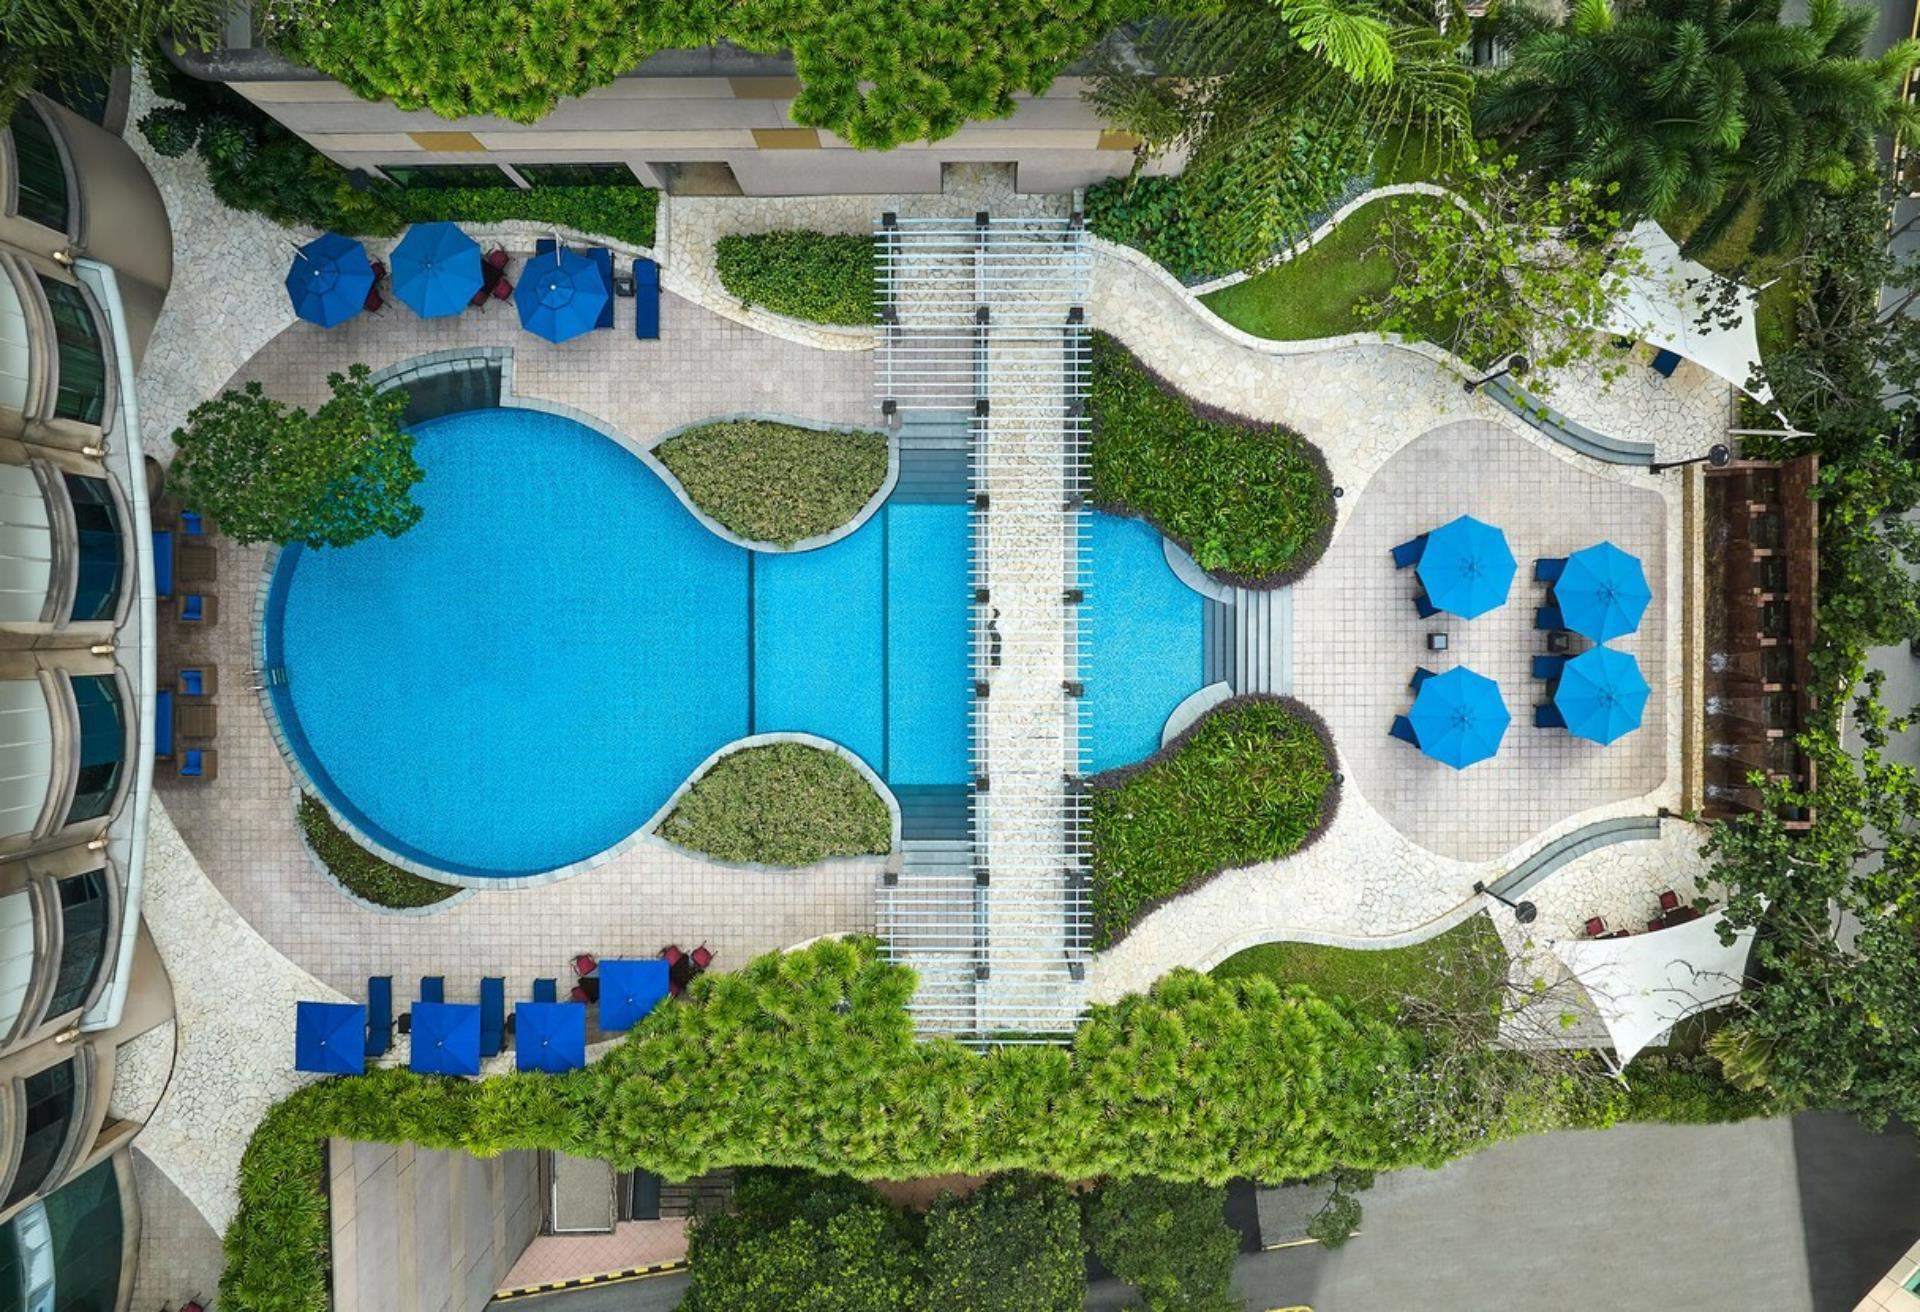 吉隆坡威斯汀酒店,吉隆坡住宿,吉隆坡無邊際泳池飯店,吉隆坡飯店推薦, 吉隆坡飯店,吉隆坡 泳池 飯店,The Westin Kuala Lumpur